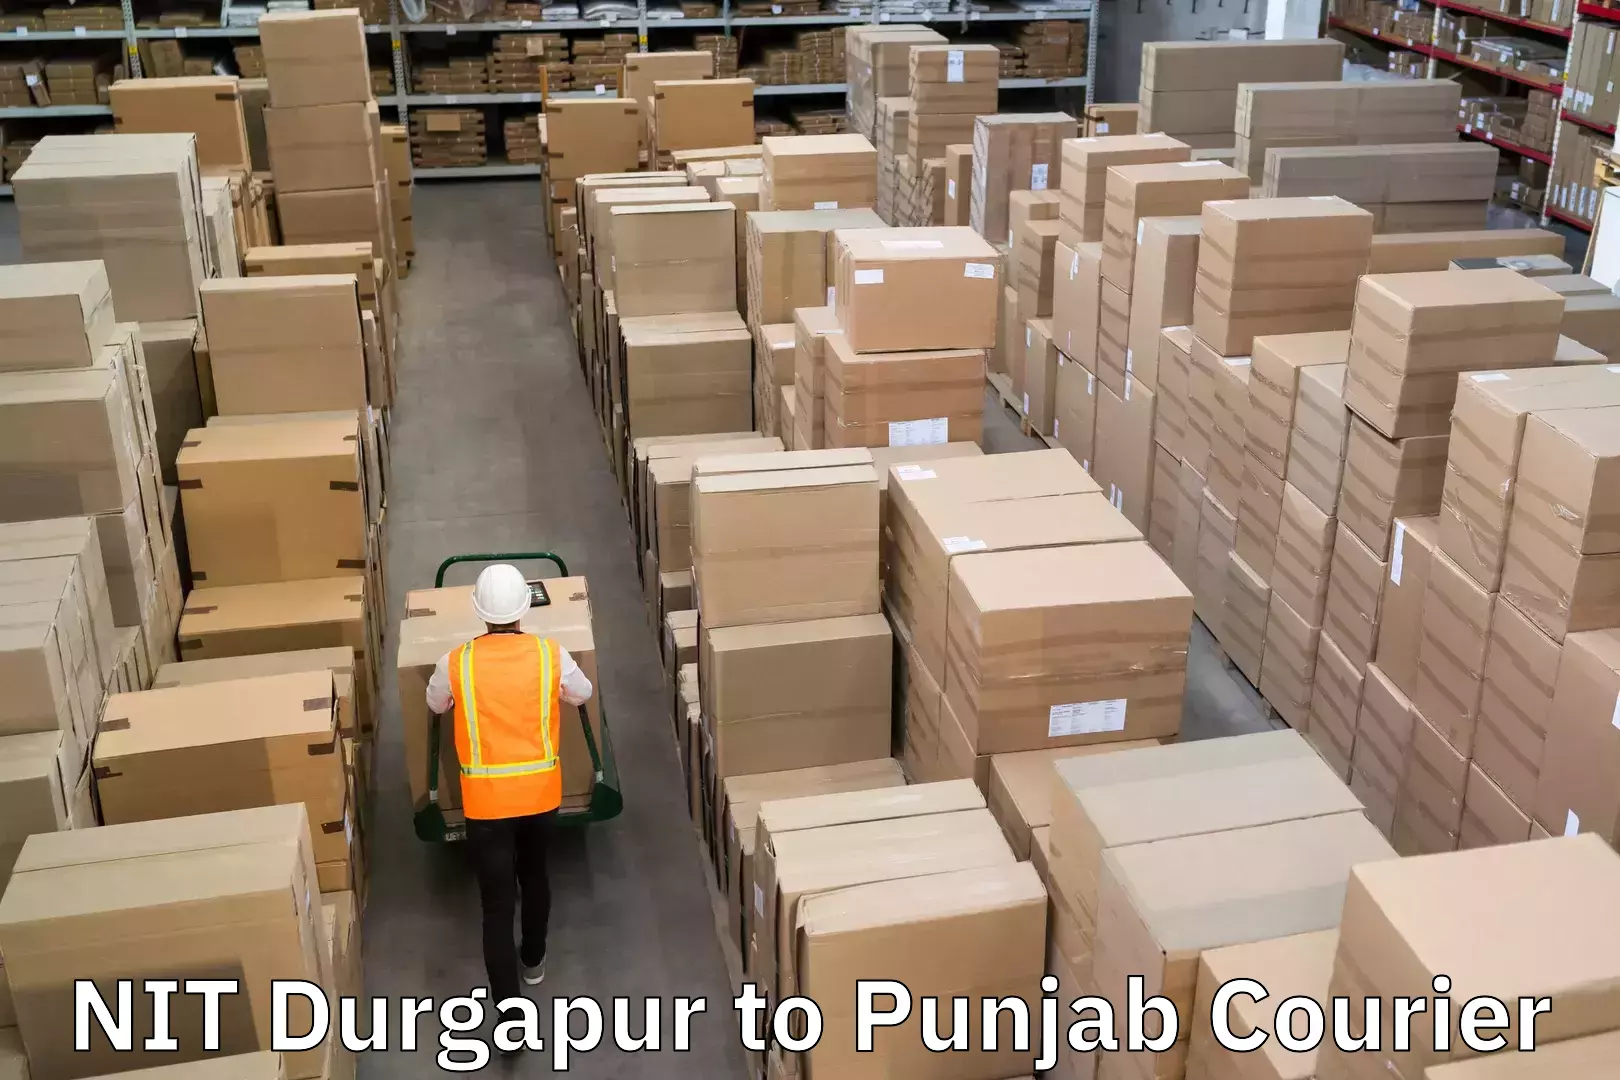 Reliable parcel services NIT Durgapur to Punjab